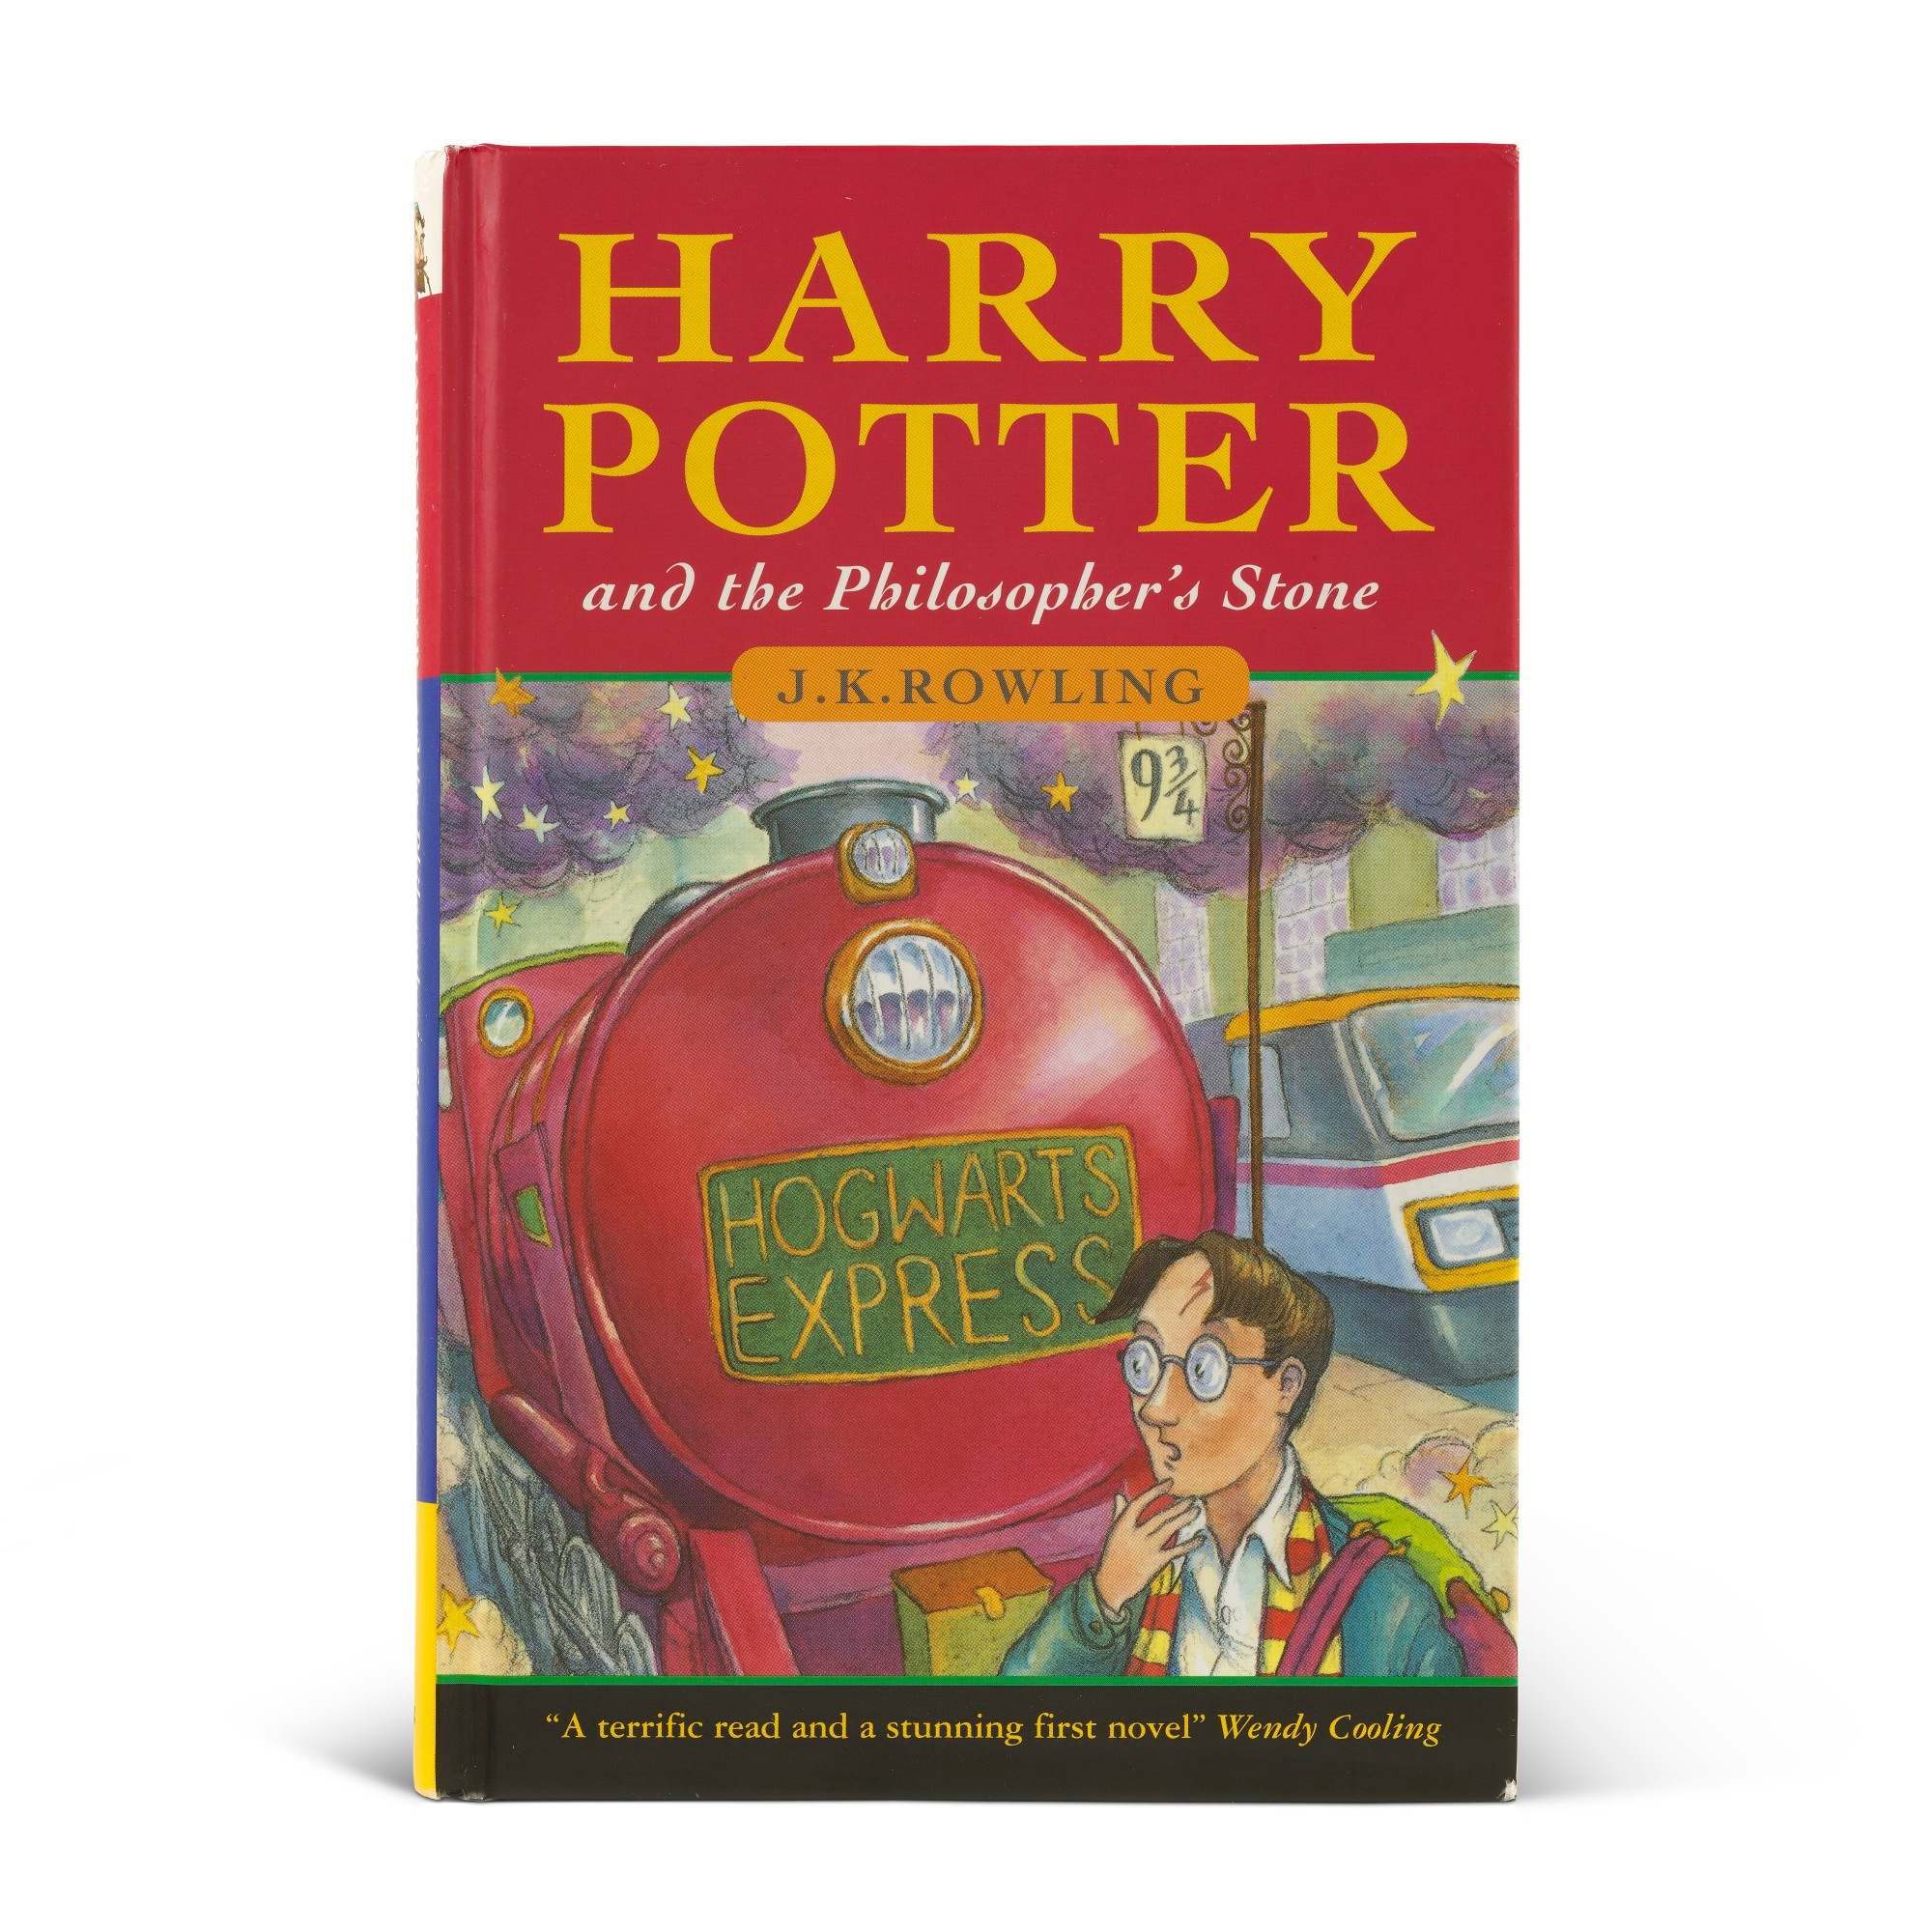 Edizioni Harry Potter: quante e quali sono? 